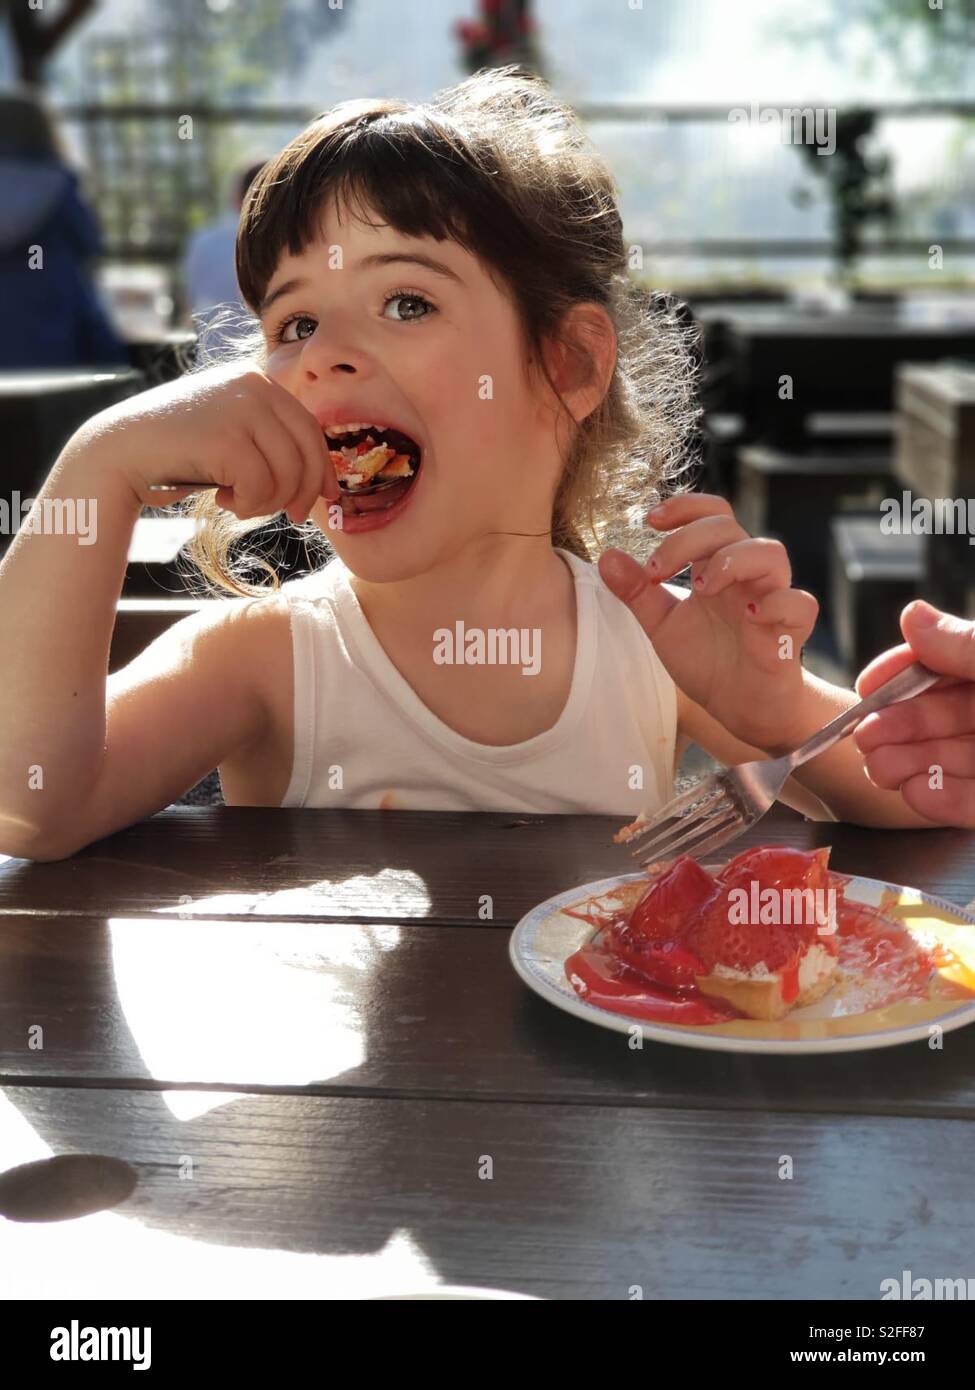 Vier Jahre alte nett schön Mädchen in einem weißen Weste essen einen Erdbeerkuchen mit großer Freude, gemeinsam mit Vater/Großvater. Große Augen, grosse Lippen, Süßes, Pudding, Datum, Wüste Stockfoto